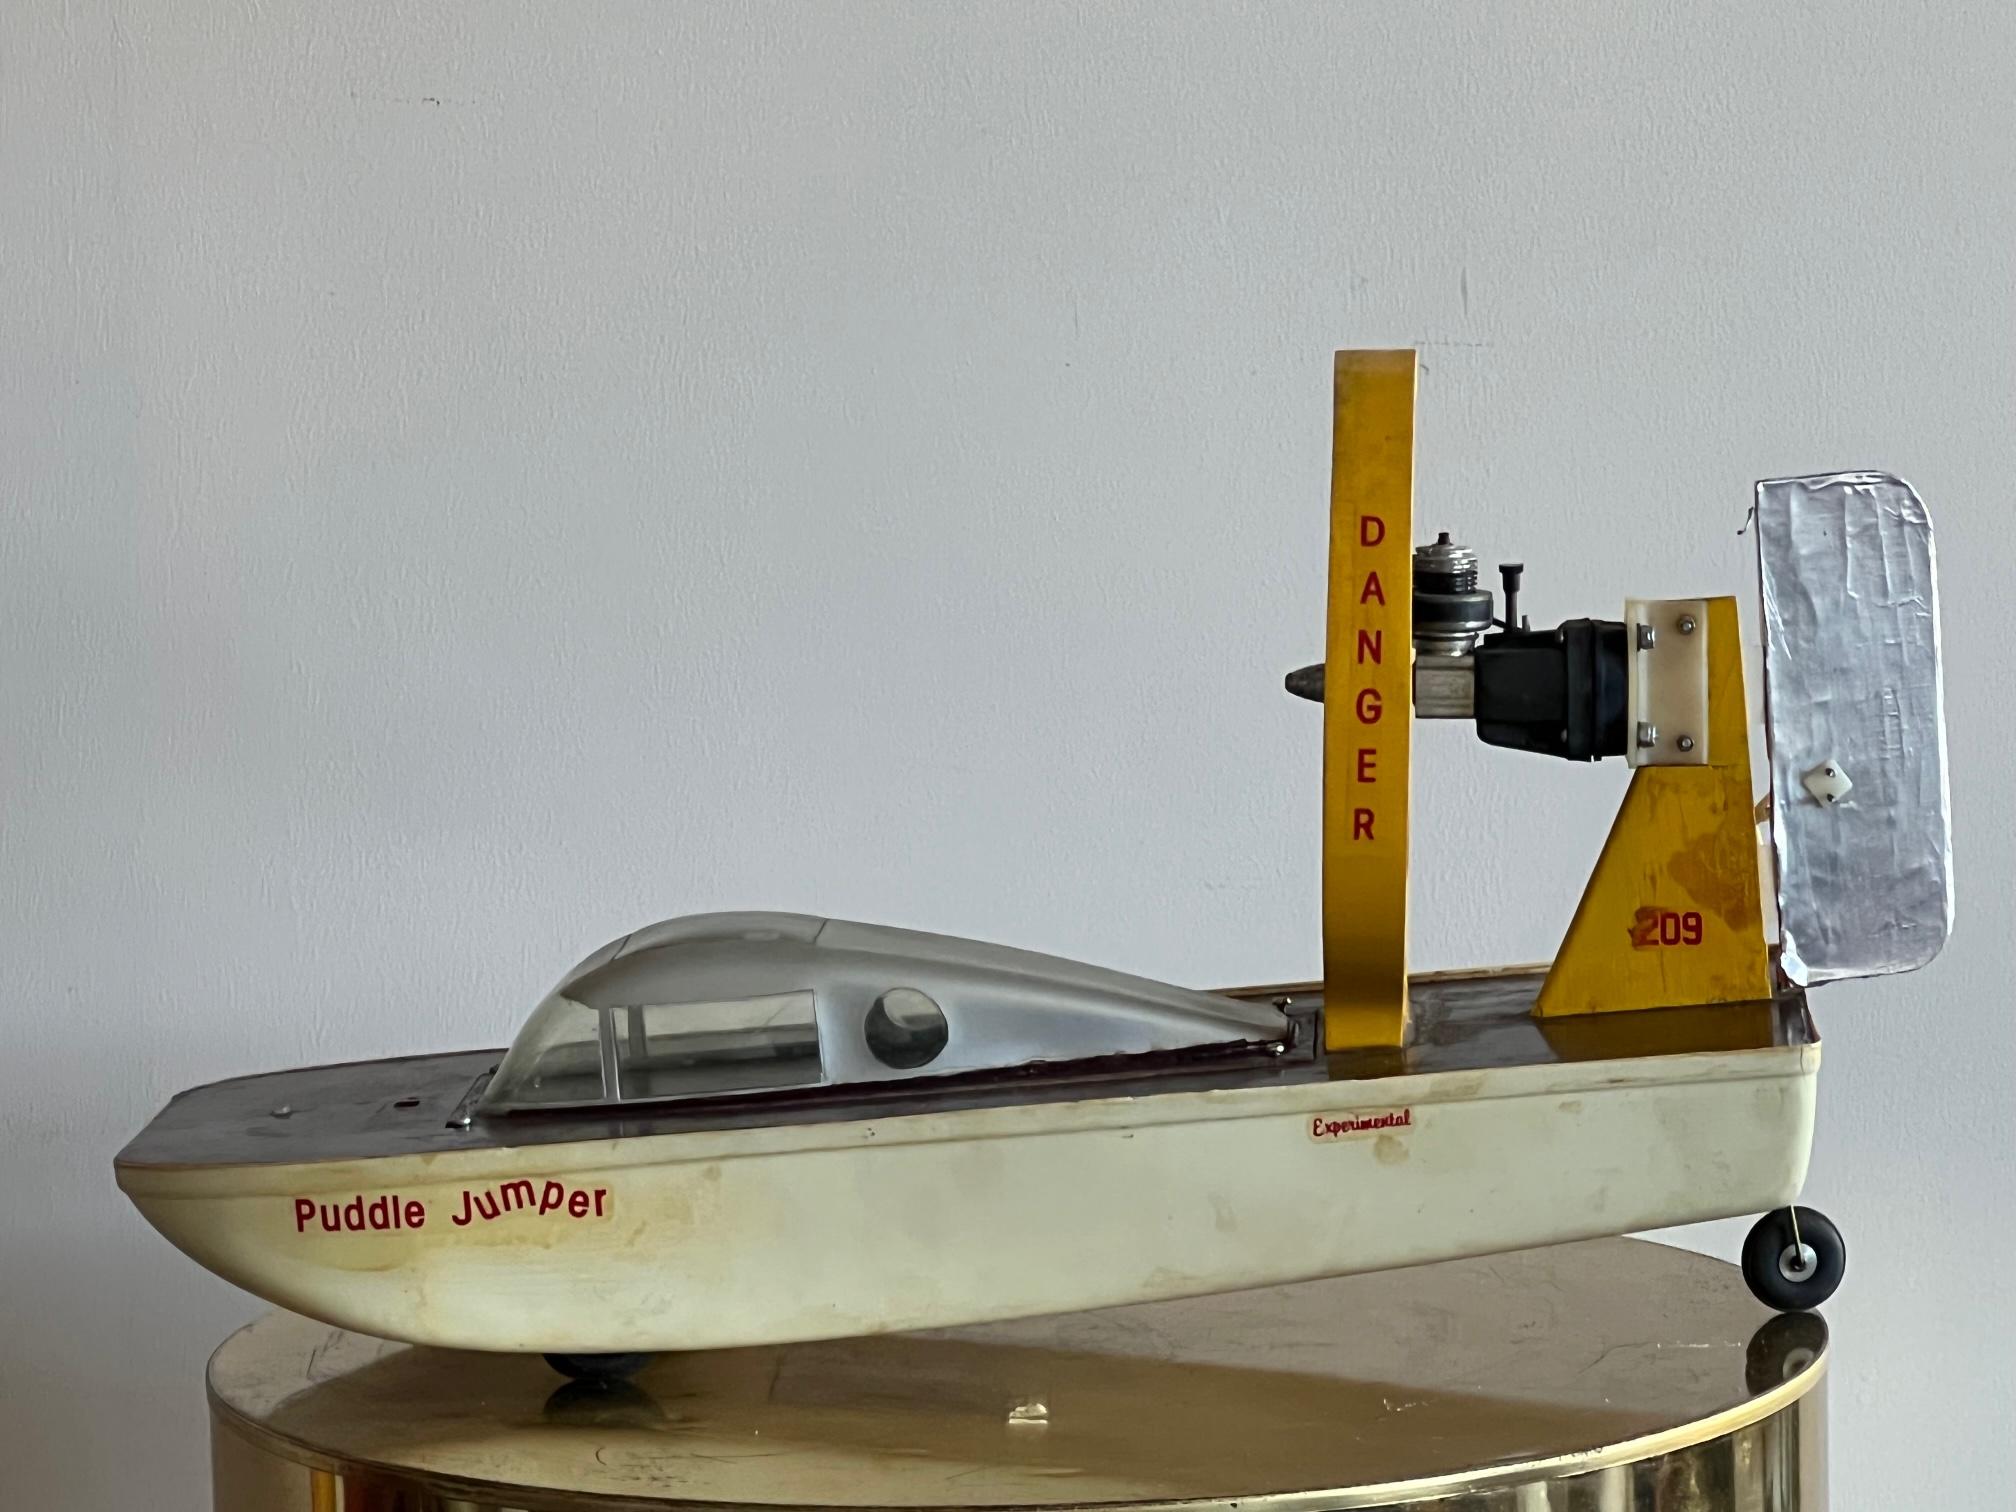 Vintage Toy Air Boat Model Puddle Jumper 4